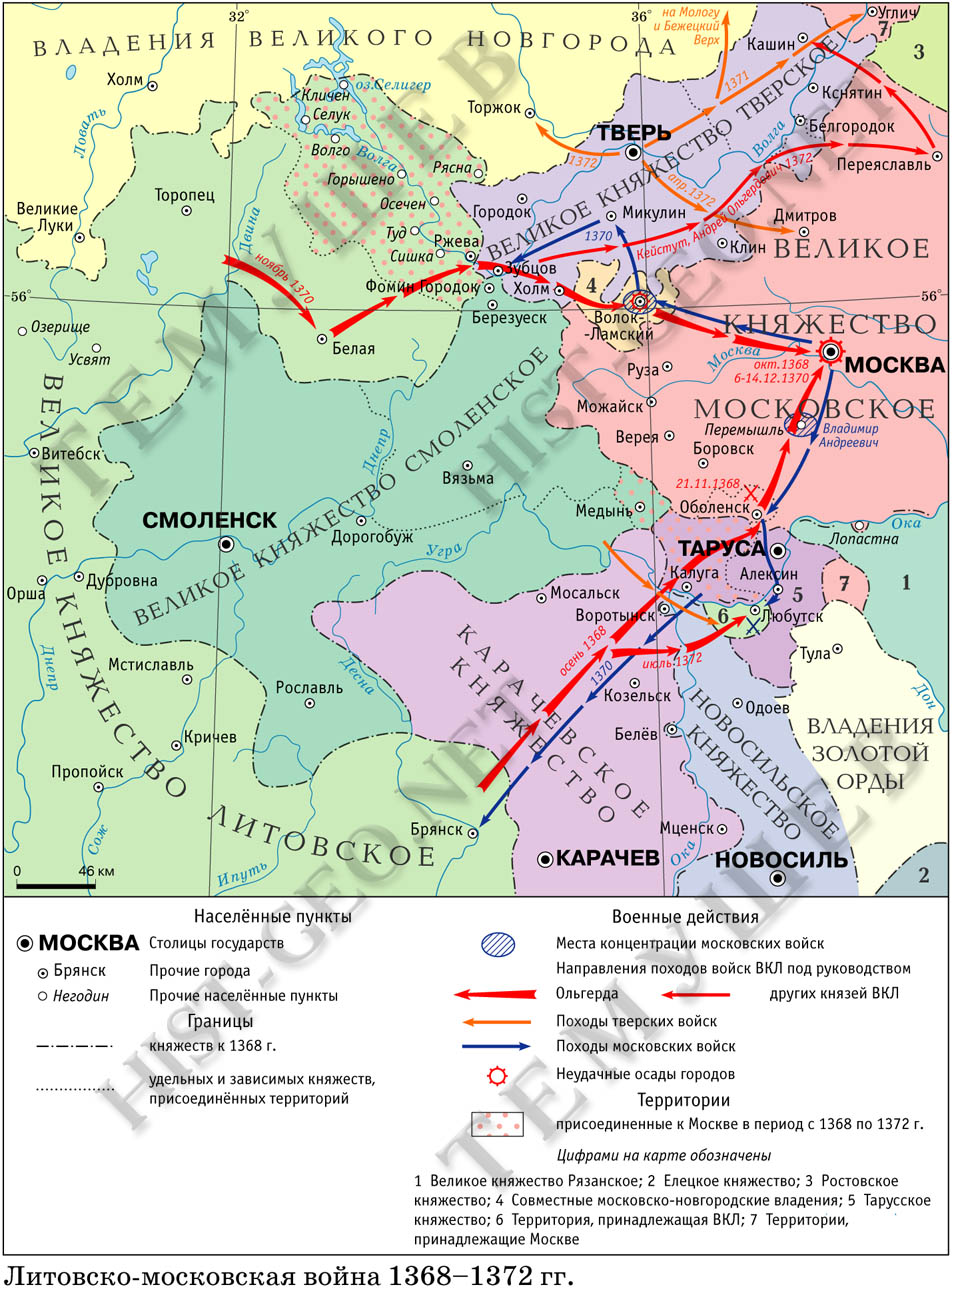 Карта московско-литовской войны 1368-1372 гг.